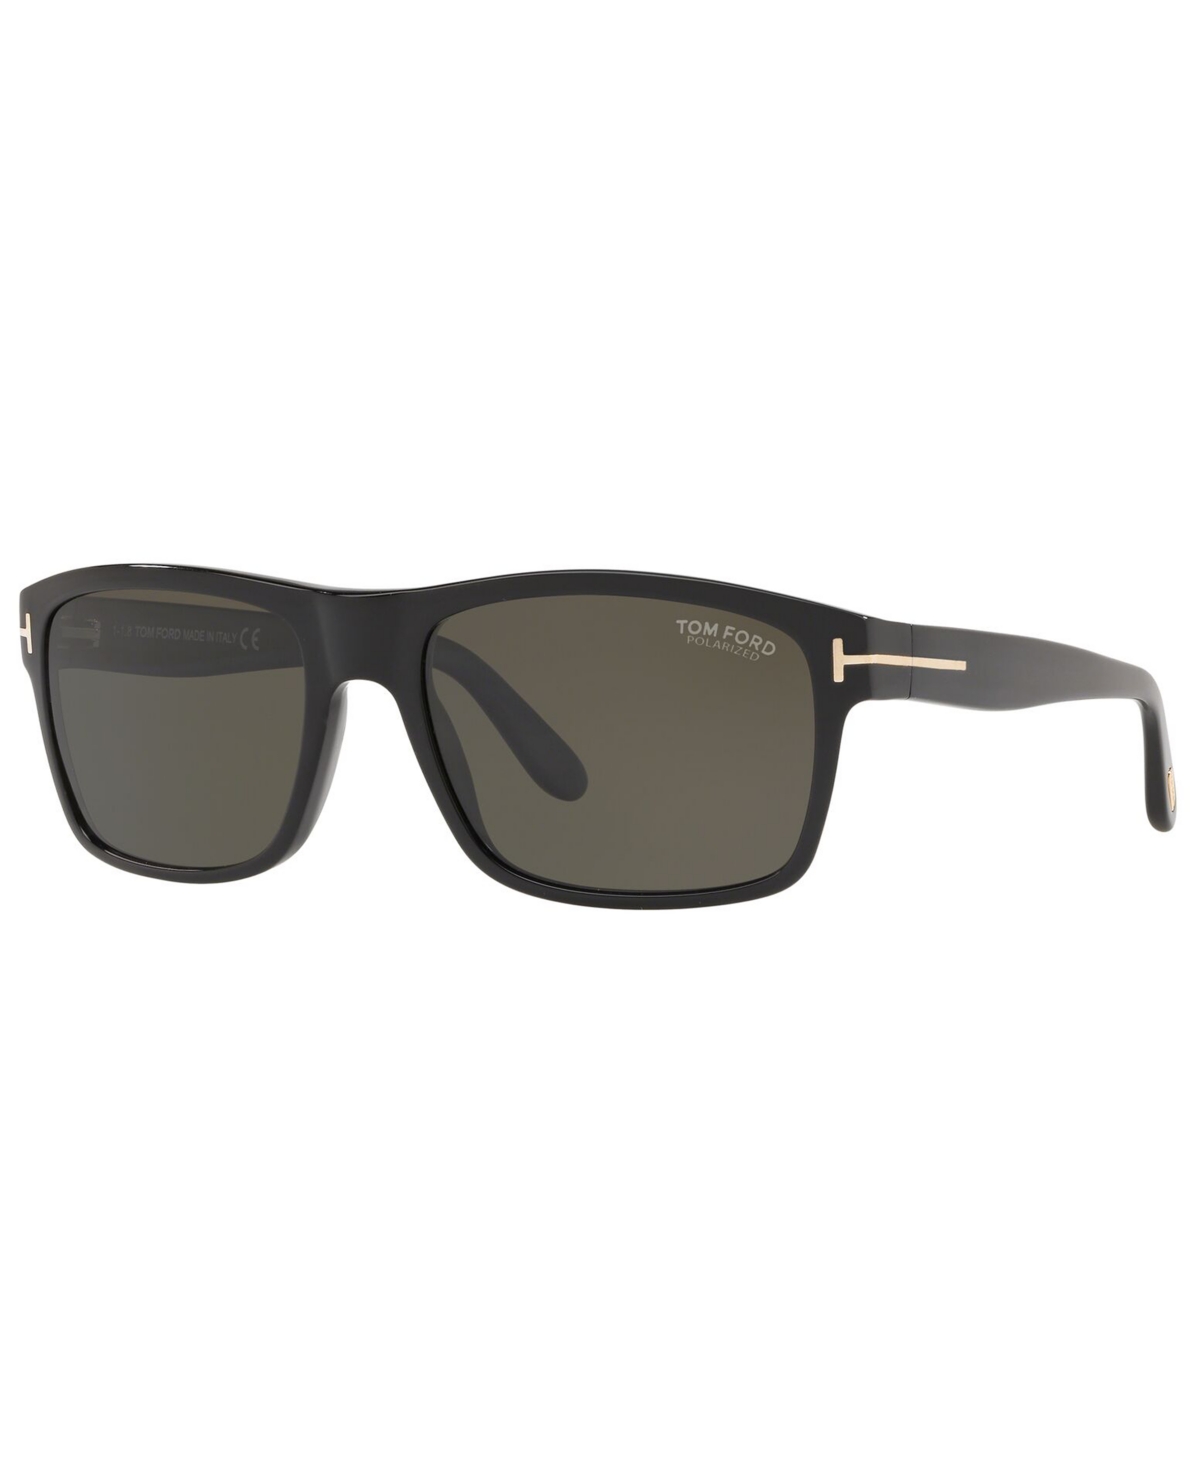 Tom Ford Men's Polarized Sunglasses, Tr001026 In Black Shiny,grey Polar